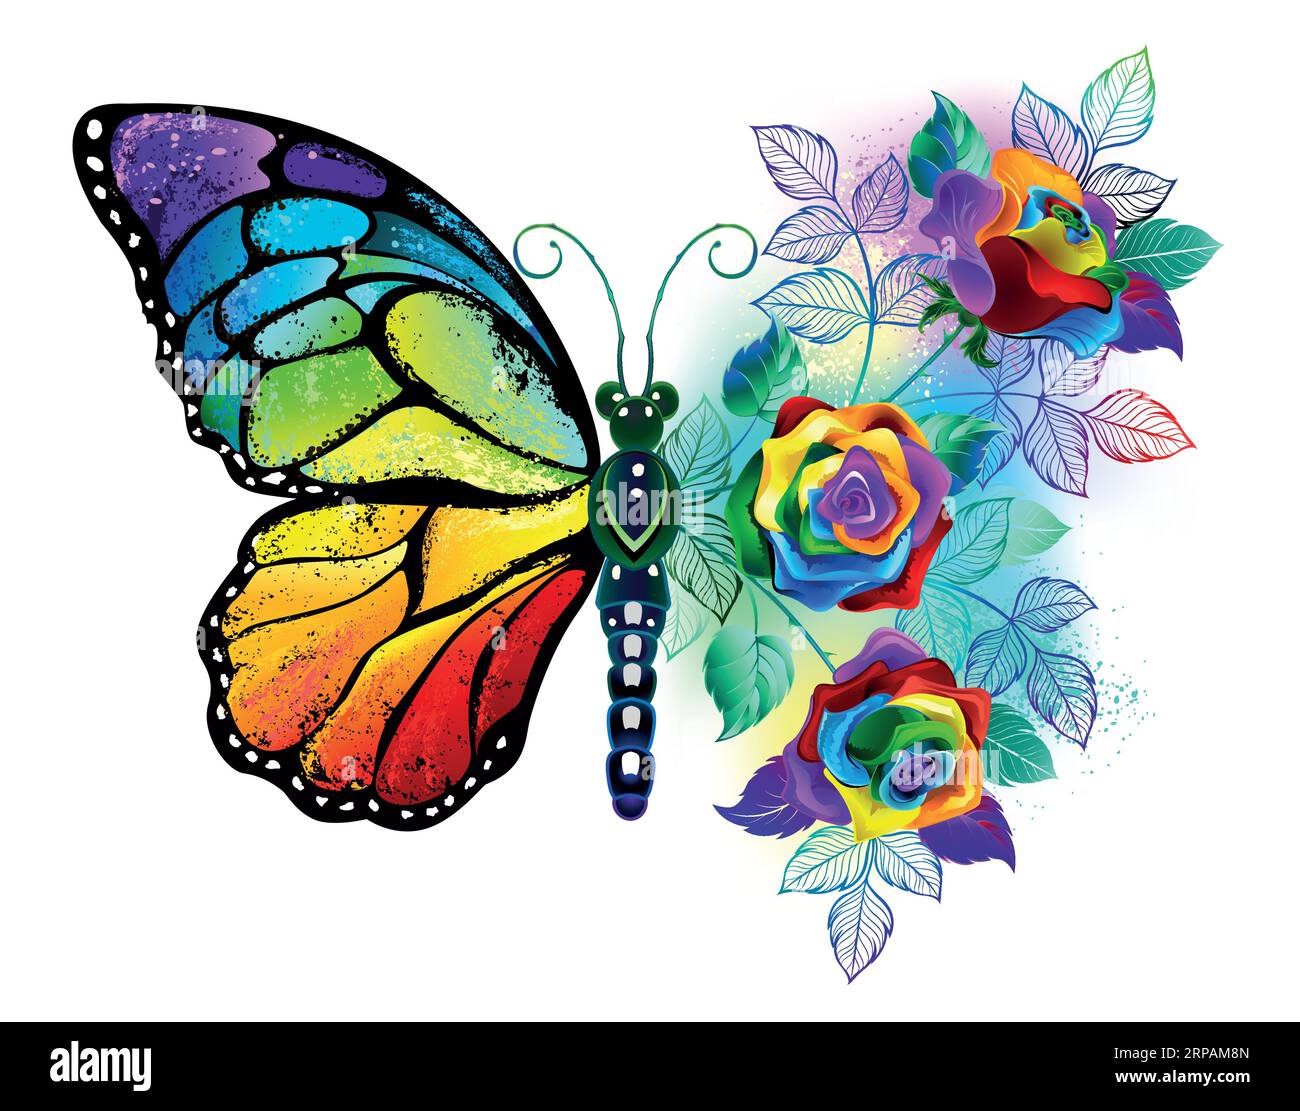 Schillernder, strukturierter, künstlerisch gezeichneter Monarchfalter mit einem Strauß Regenbogen, helle Rosen auf weißem Hintergrund. Regenbogenfalter. Stock Vektor